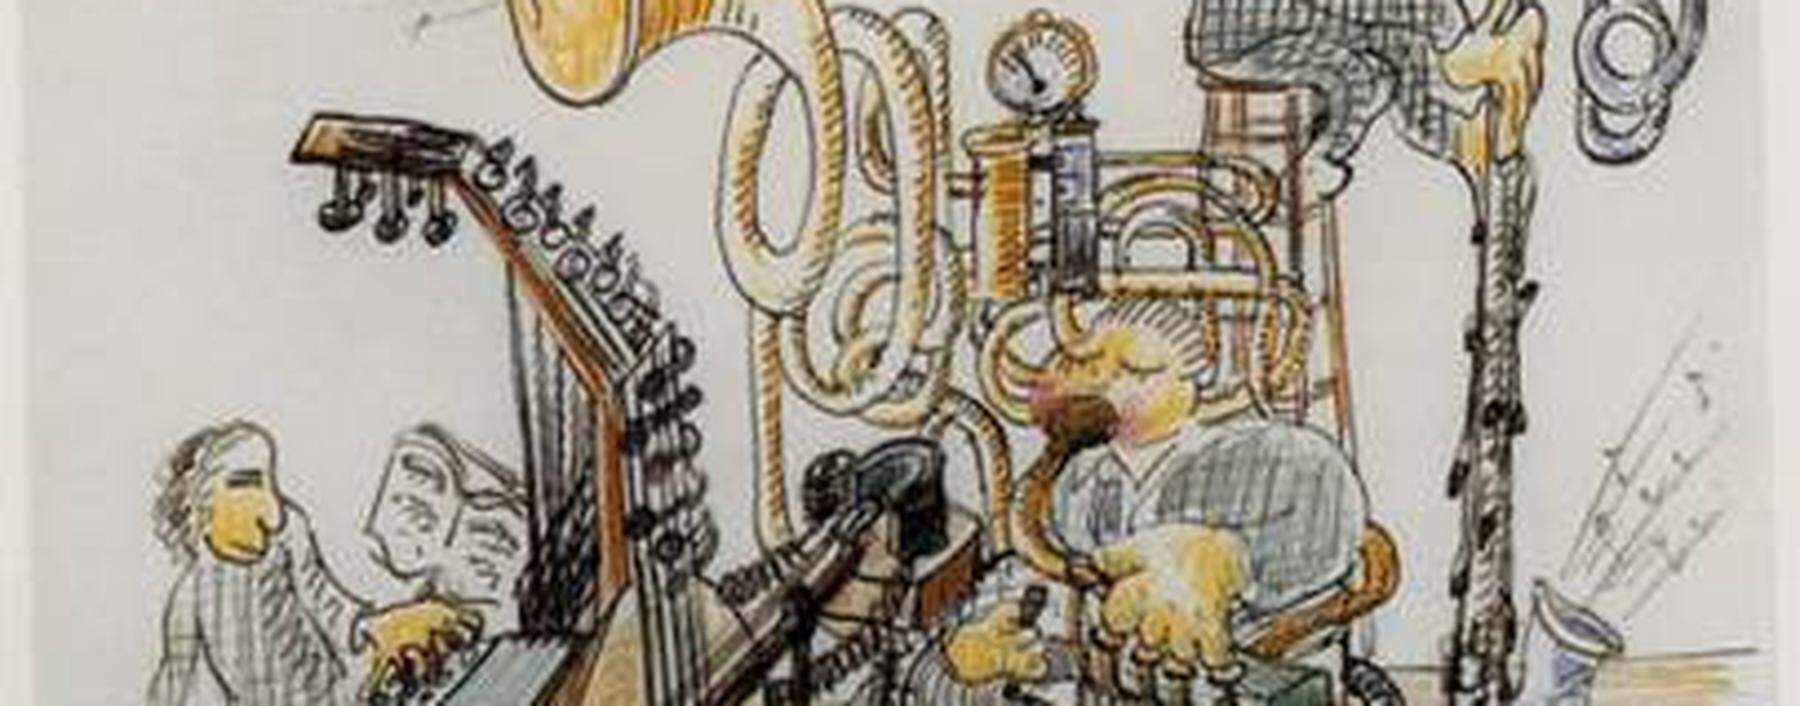 Hindemiths Zeichnungen: „Lustig“? Vielleicht – aber auch hintergründig, manchmal abgründig. 